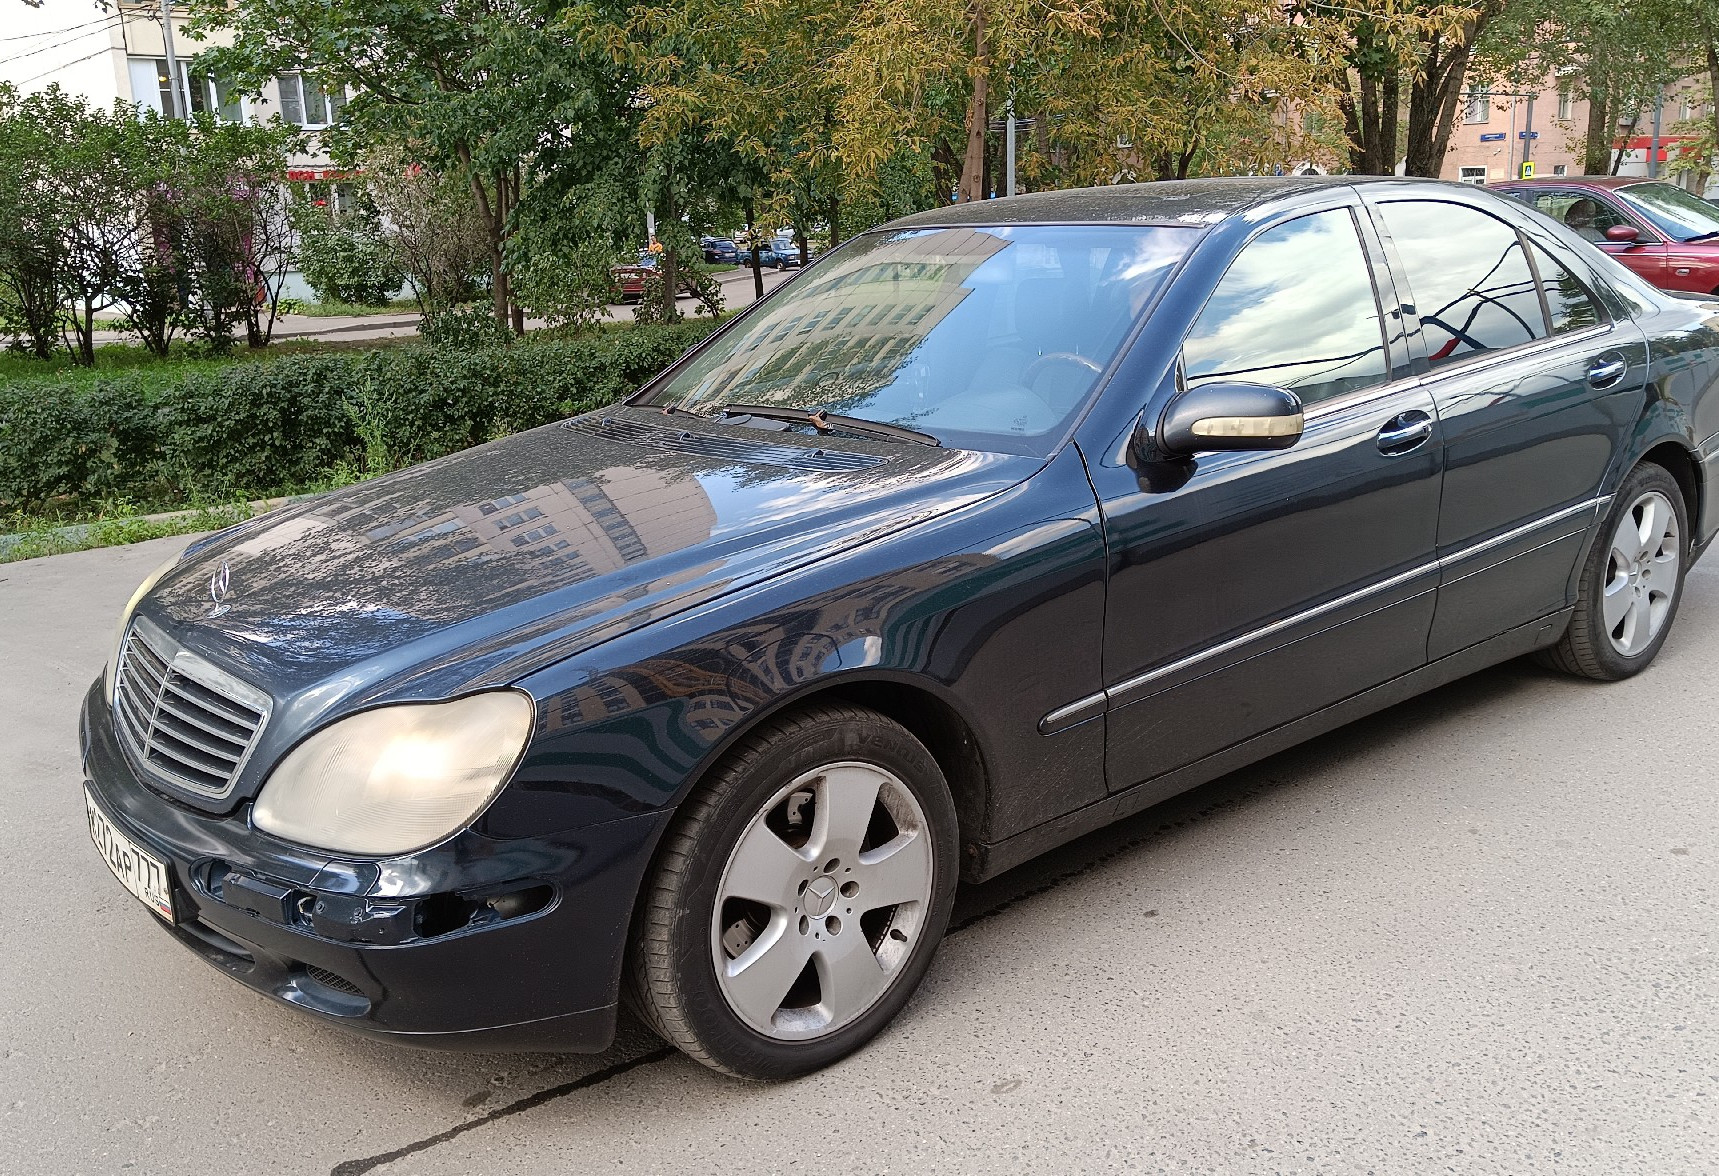 Аренда mercedes-benz s-klass стандарт класса 2002 года в городе Москва Люблино от 3300 руб./сутки, задний привод, двигатель: бензин, объем 3.2 литра, ОСАГО (Мультидрайв), без водителя, недорого - RentRide